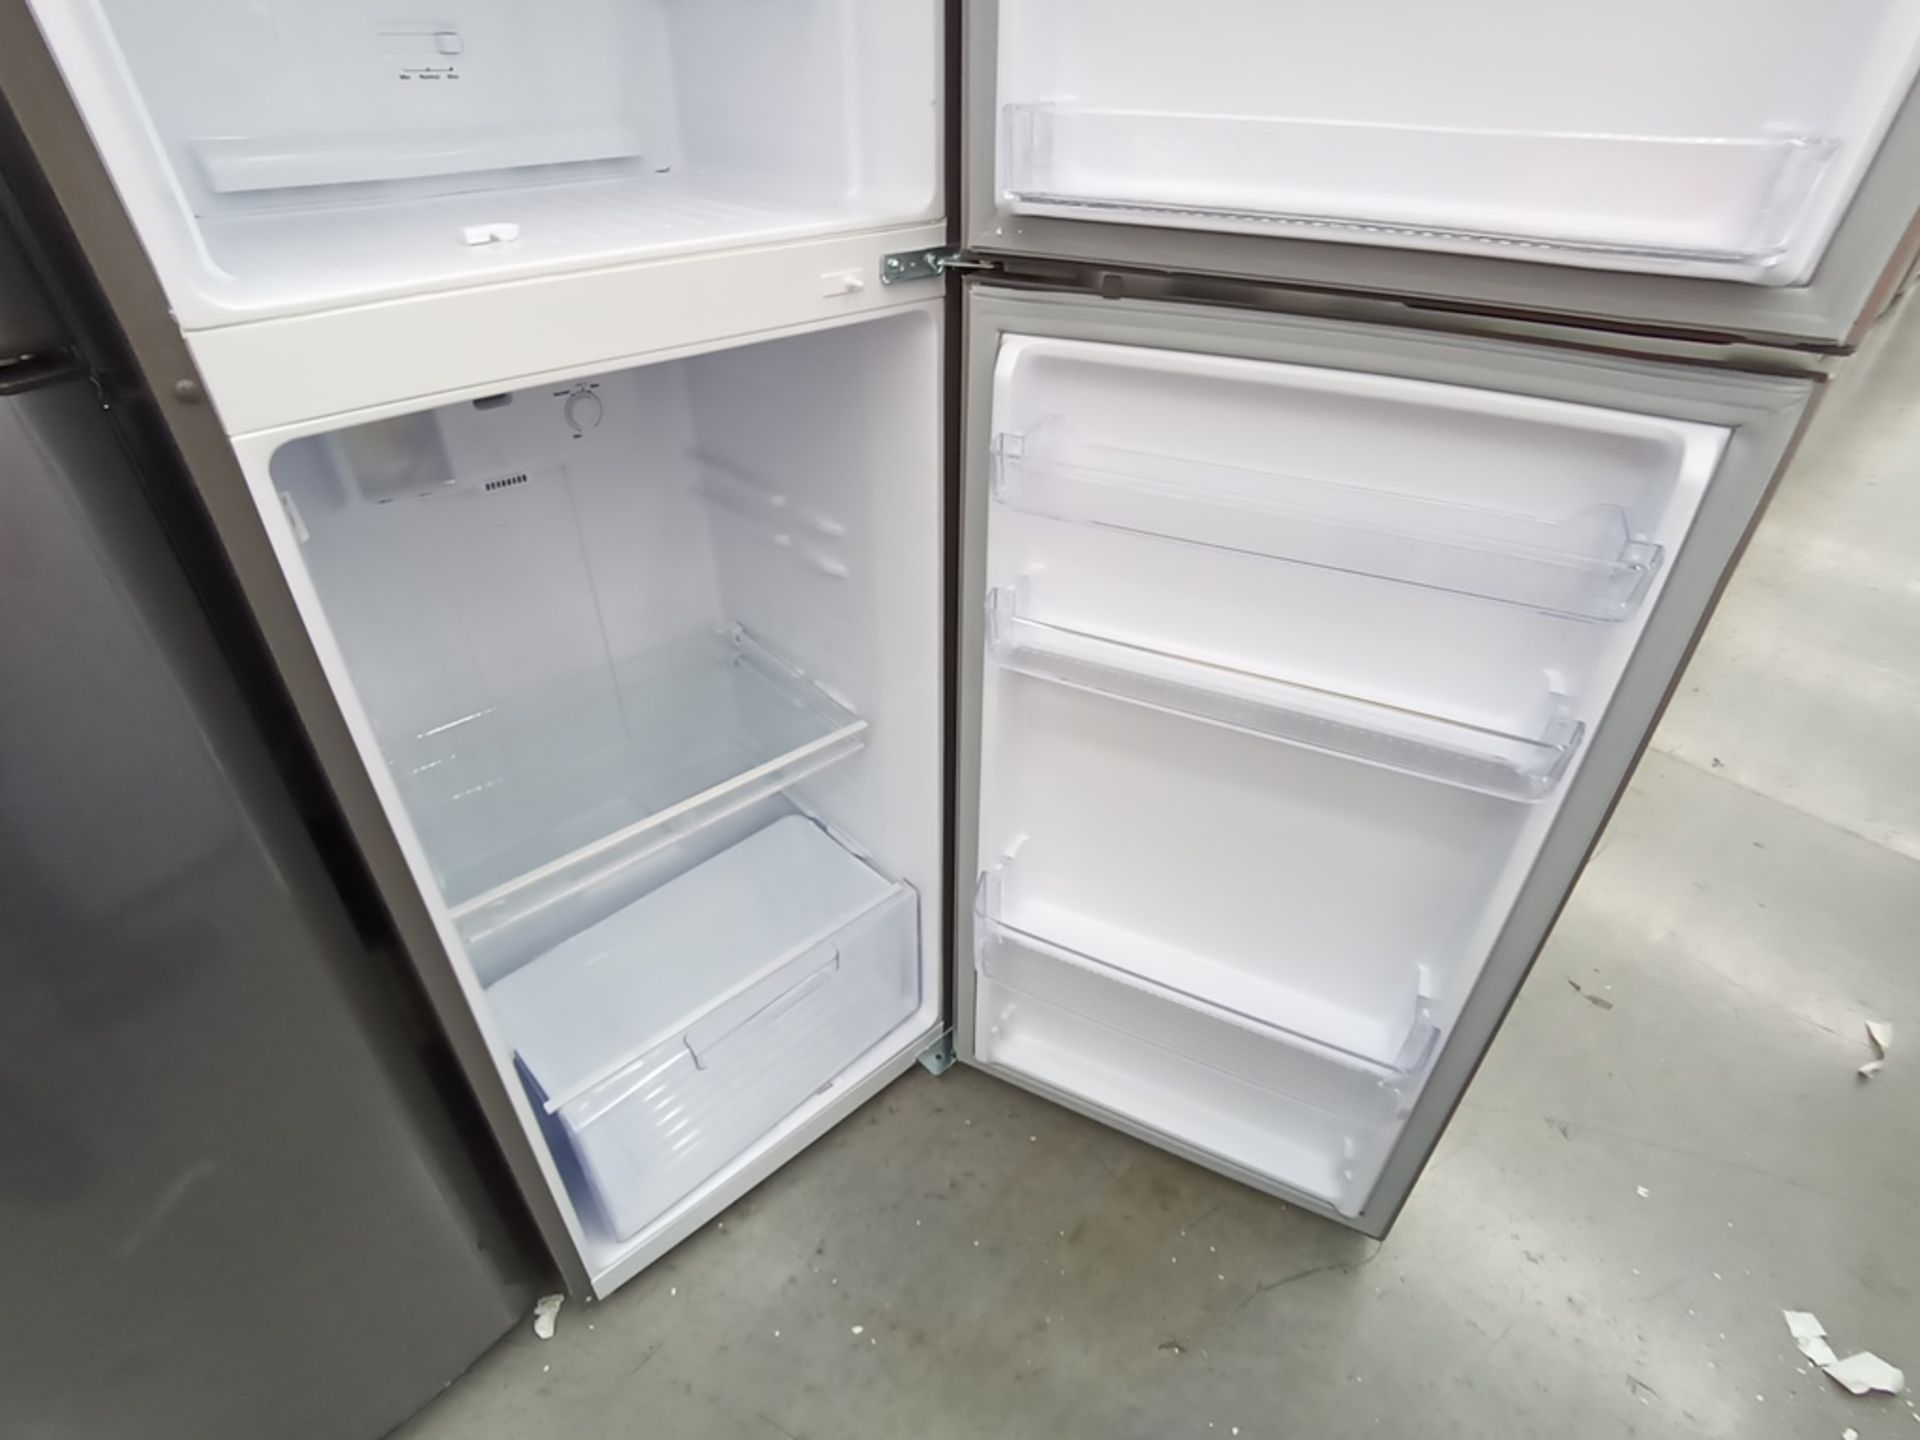 Lote de 2 refrigeradores contiene: 1 Refrigerador con dispensador de agua, Marca Winia, Modelo DFR- - Image 9 of 15